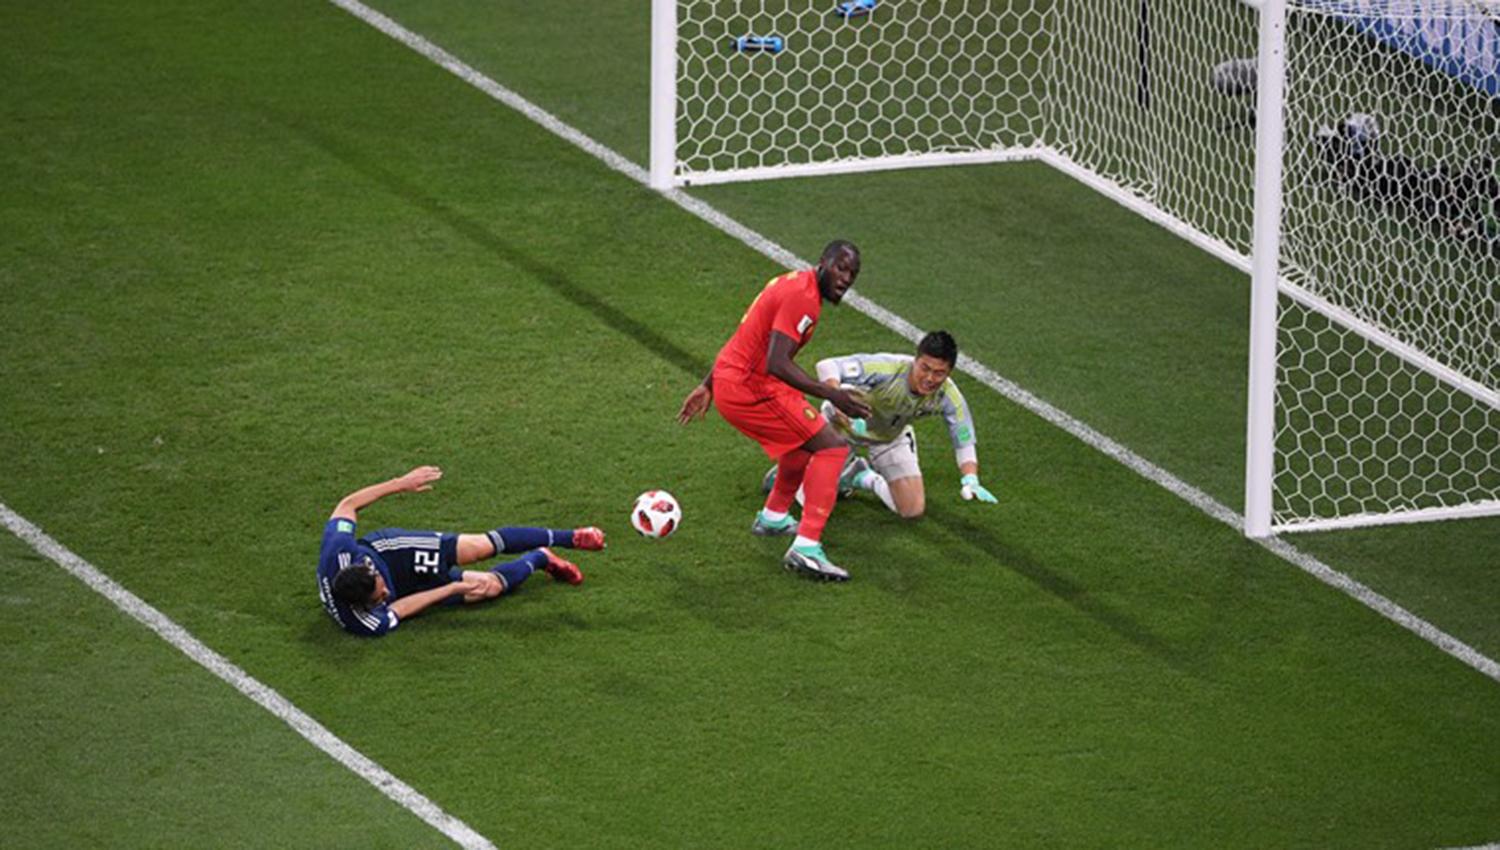 Lukaku, en una de las acciones más peligrosas del primer tiempo.
FOTO TOMADA DE ES.FIFA.COM